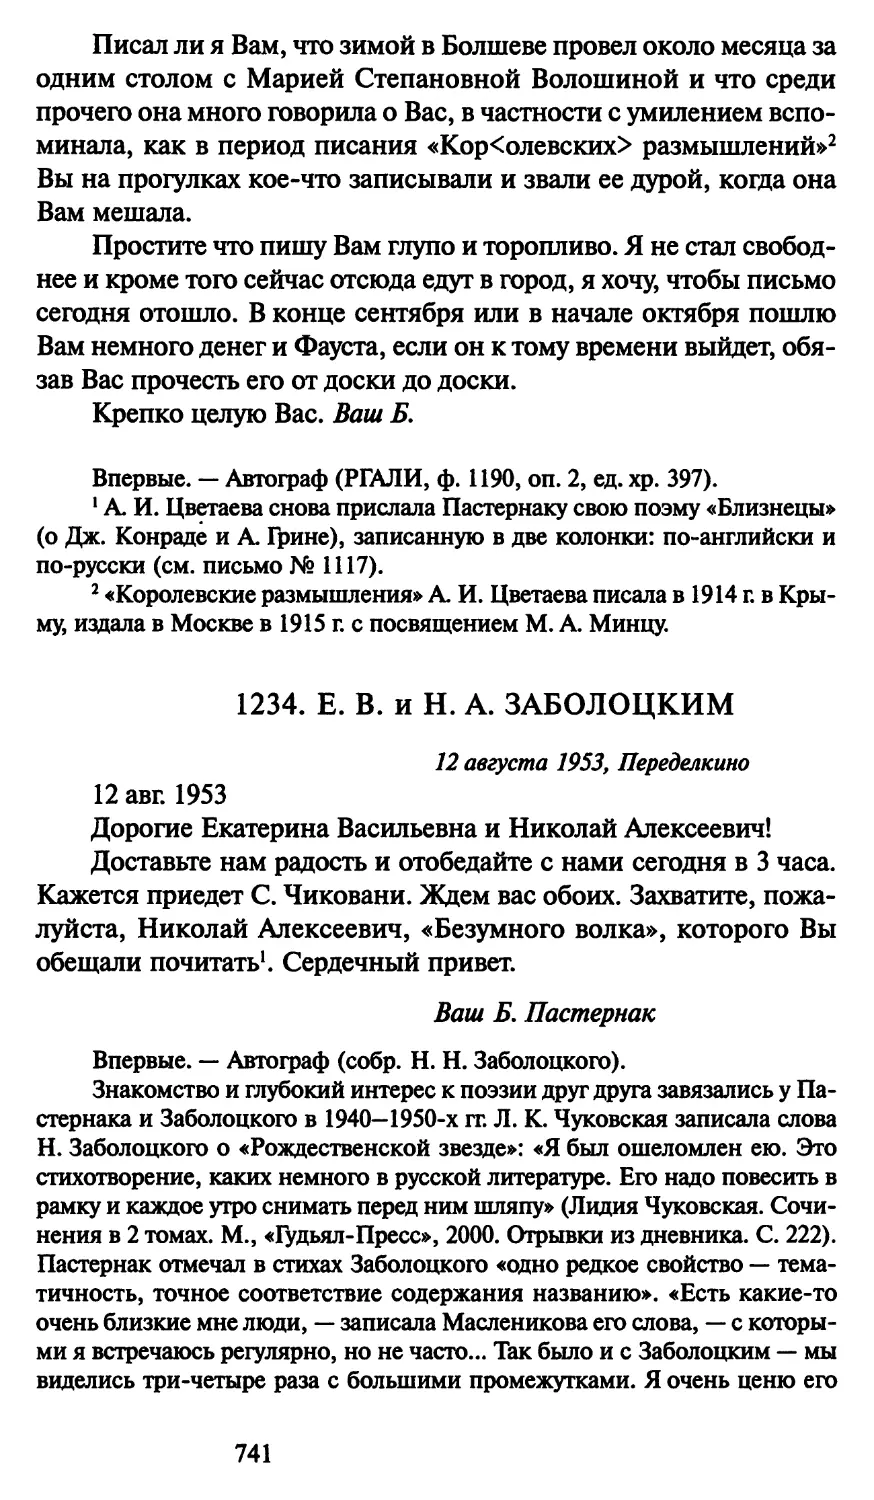 1234. Е. В. и Н. А. Заболоцким 12 августа 1953